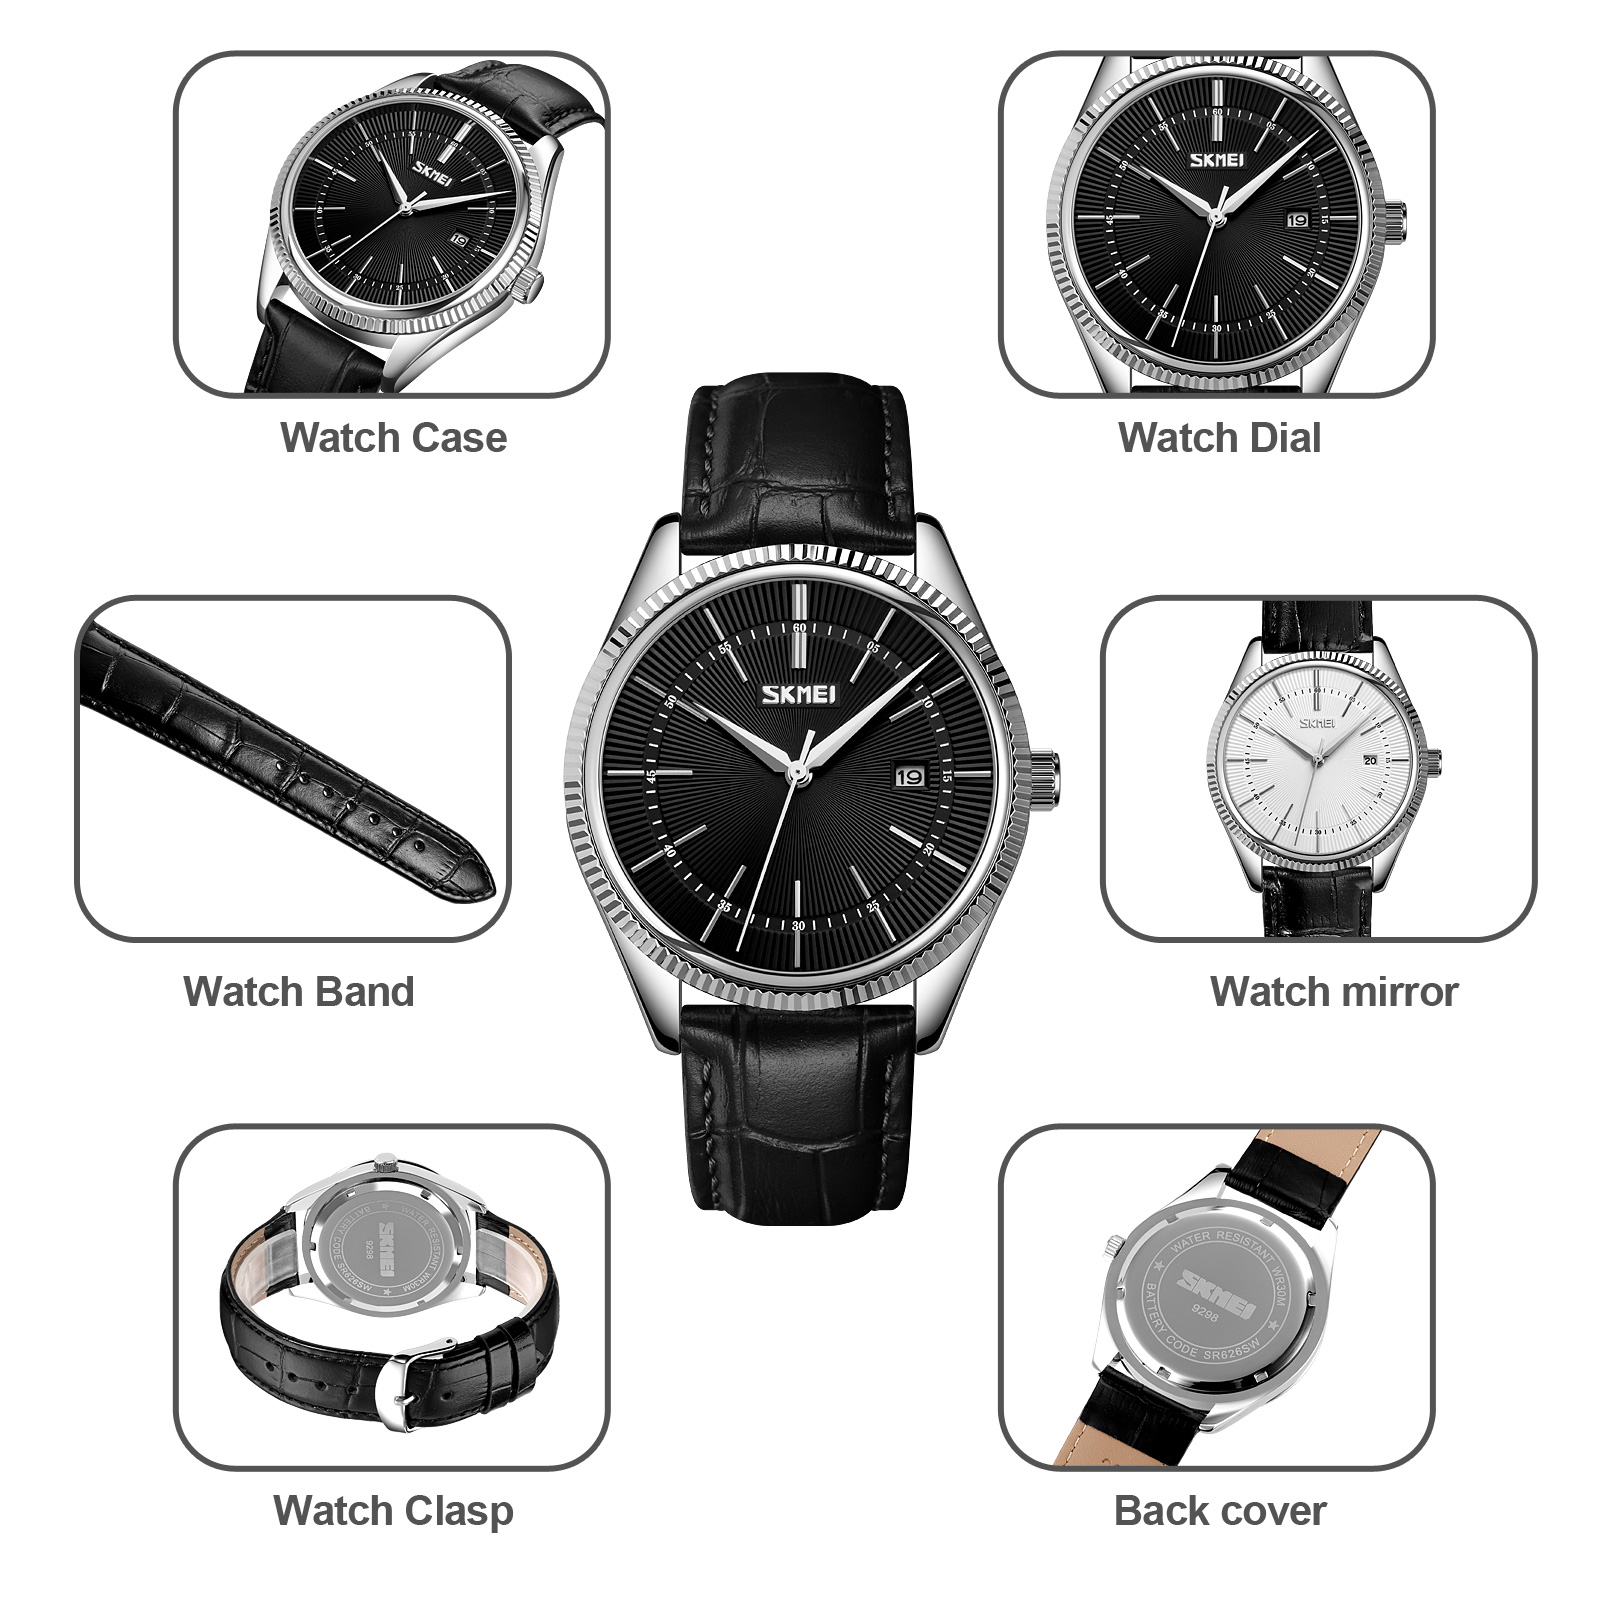 skmei-watch-model-9298-10